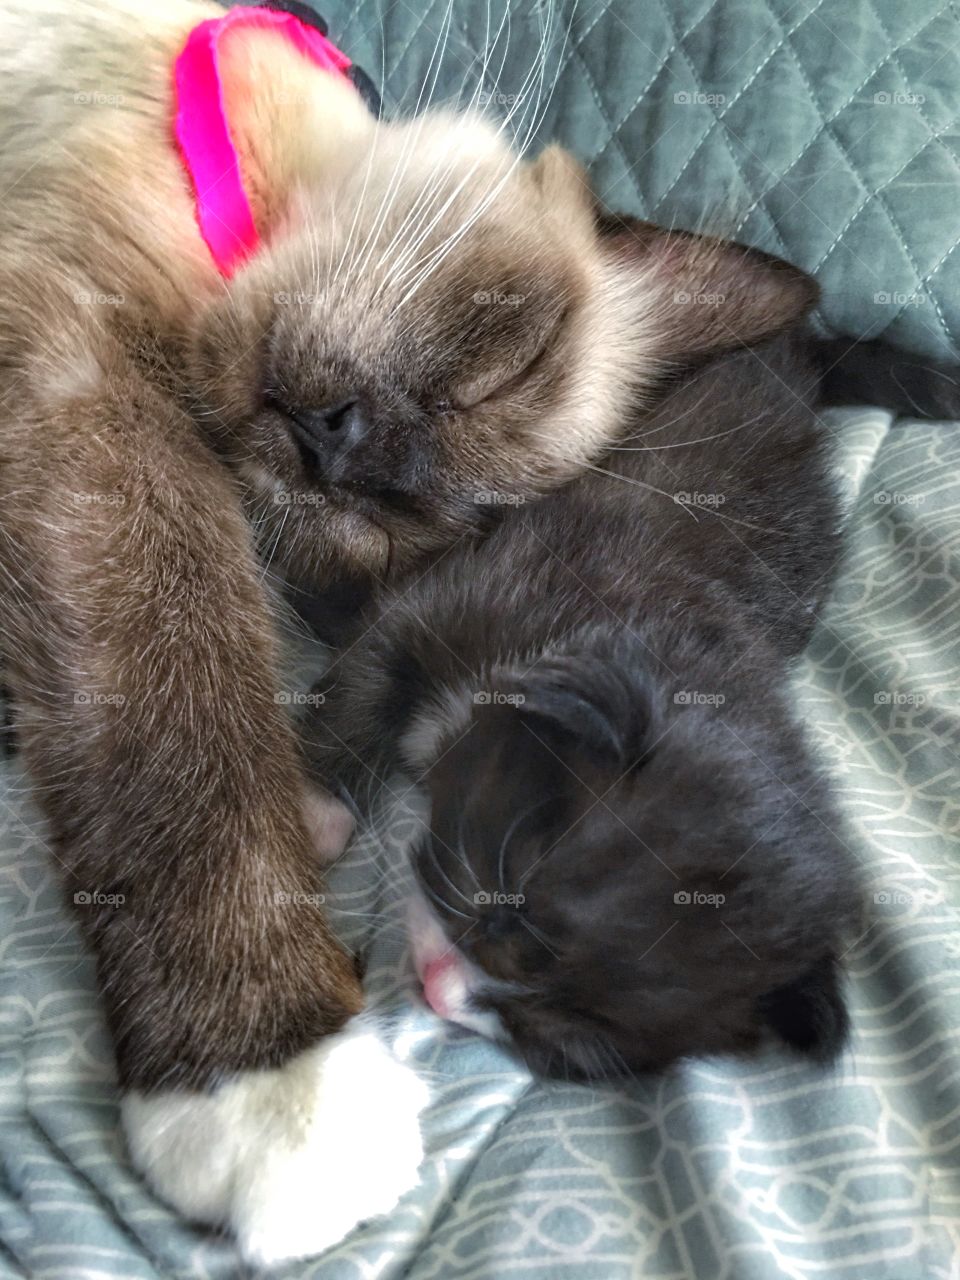 Mama cat and baby kitten sleeping 